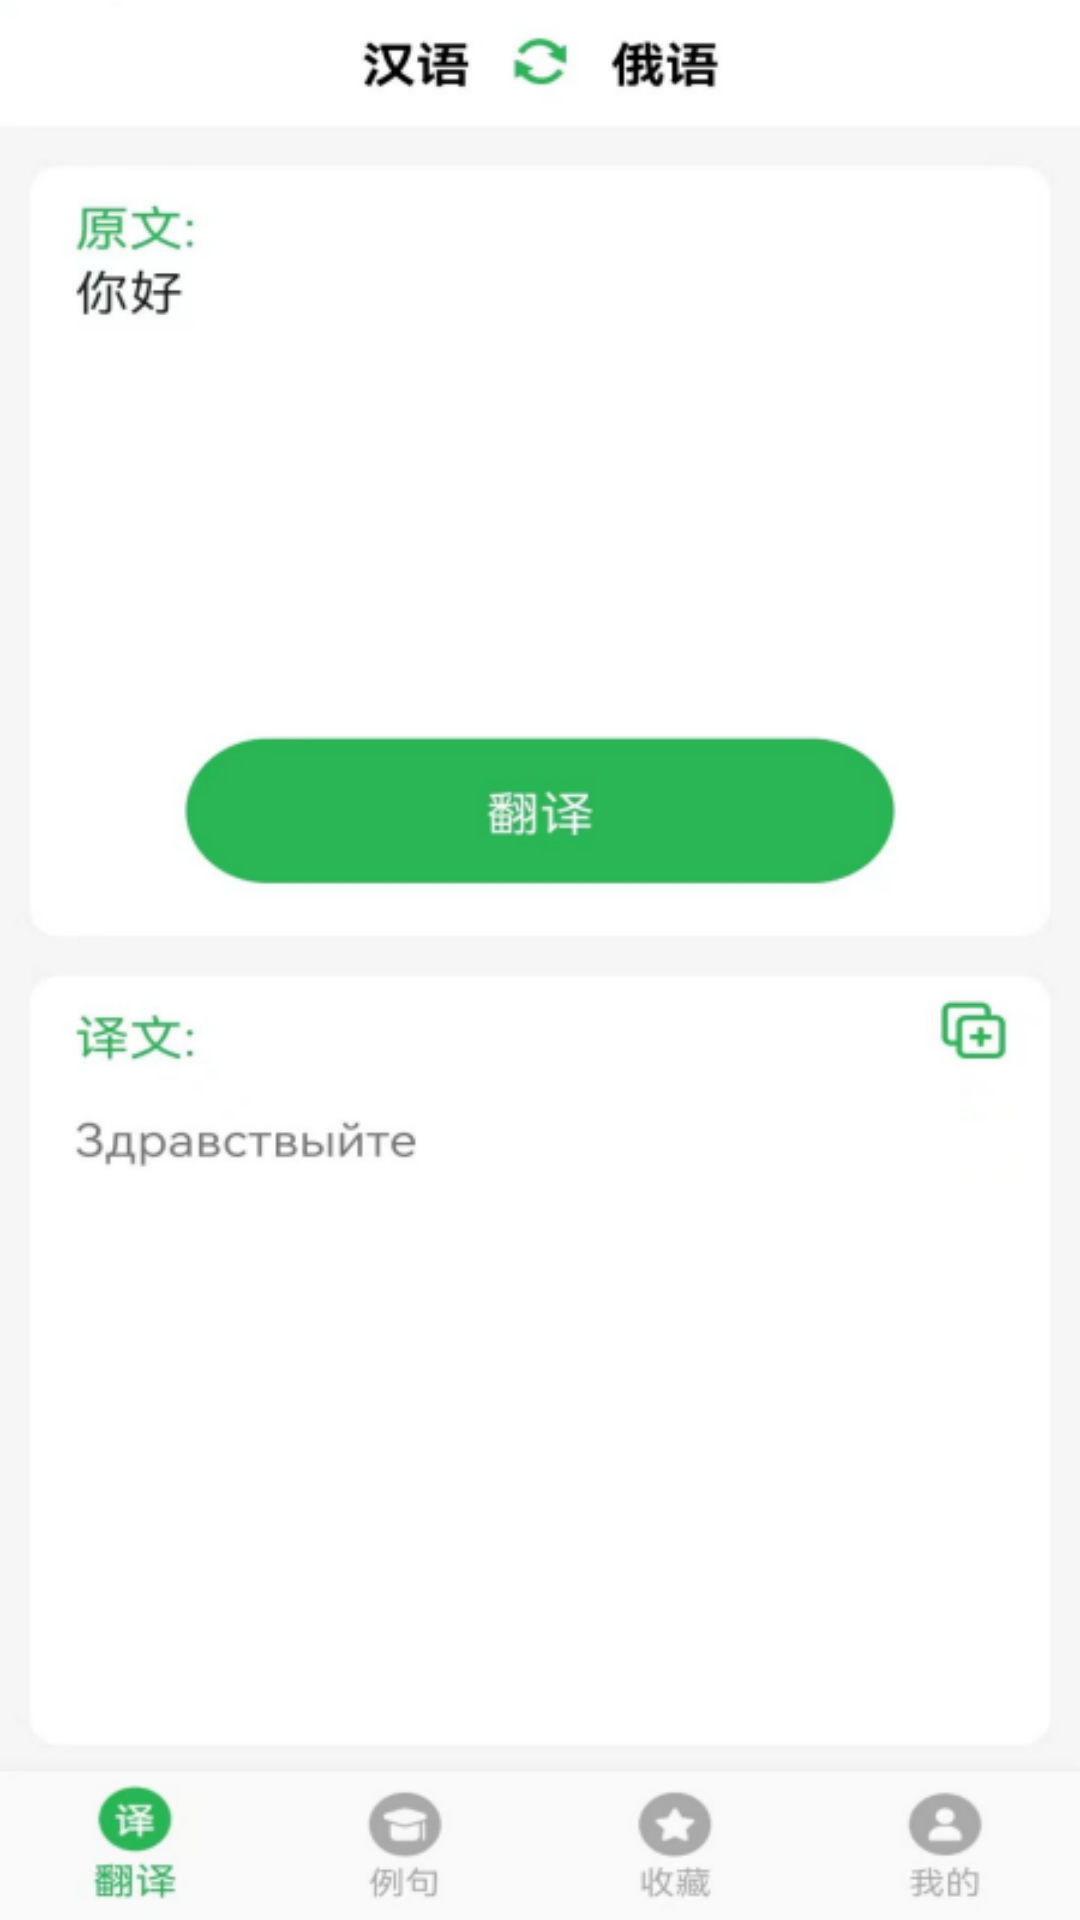 天天俄语翻译软件下载官方版图1: